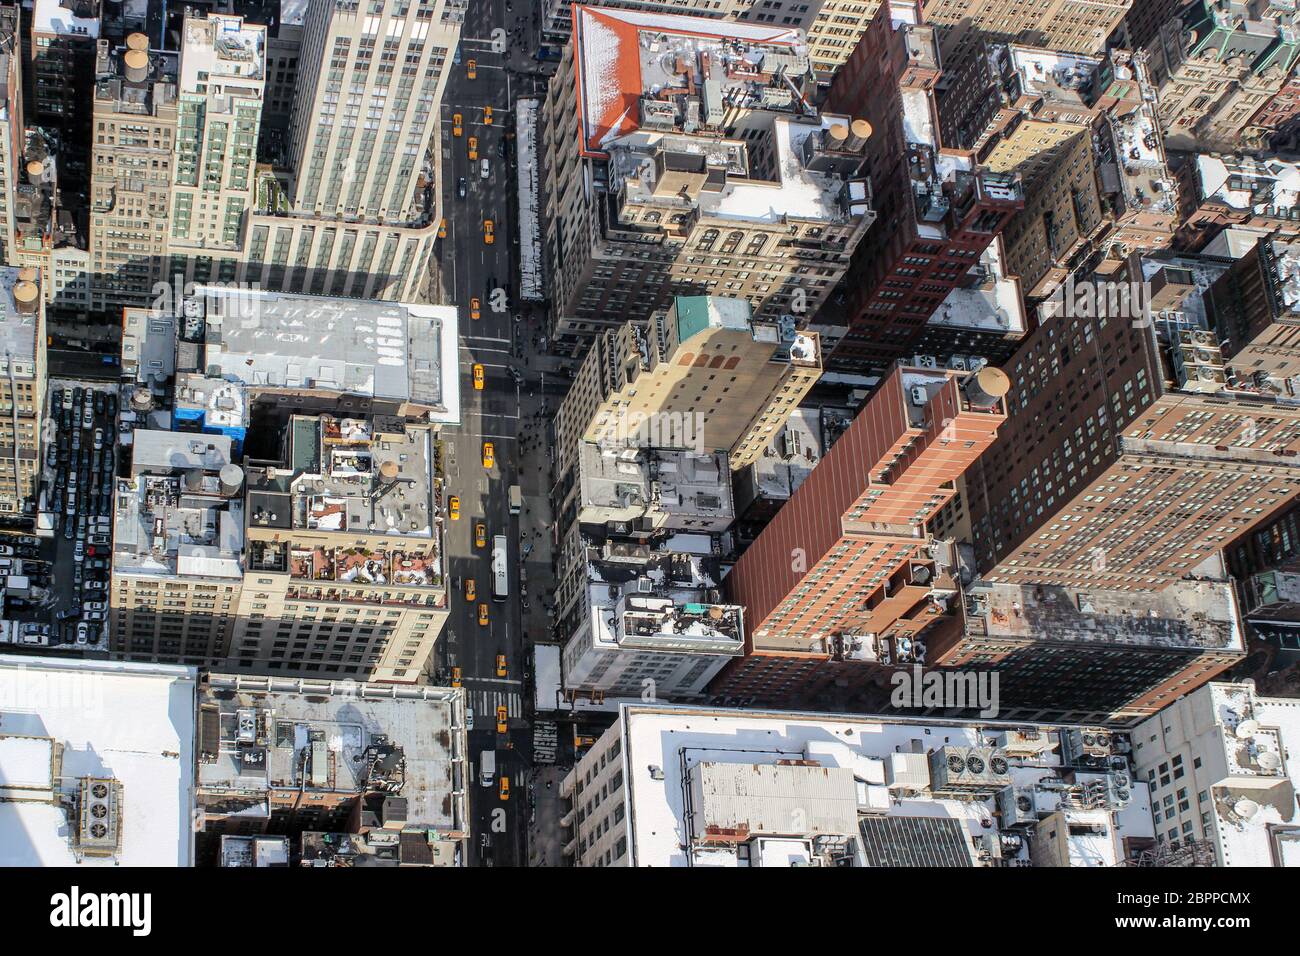 Vue aérienne des bâtiments de Midtown Manhattan avec taxis jaunes dans la rue de New York City, États-Unis d'Amérique Banque D'Images